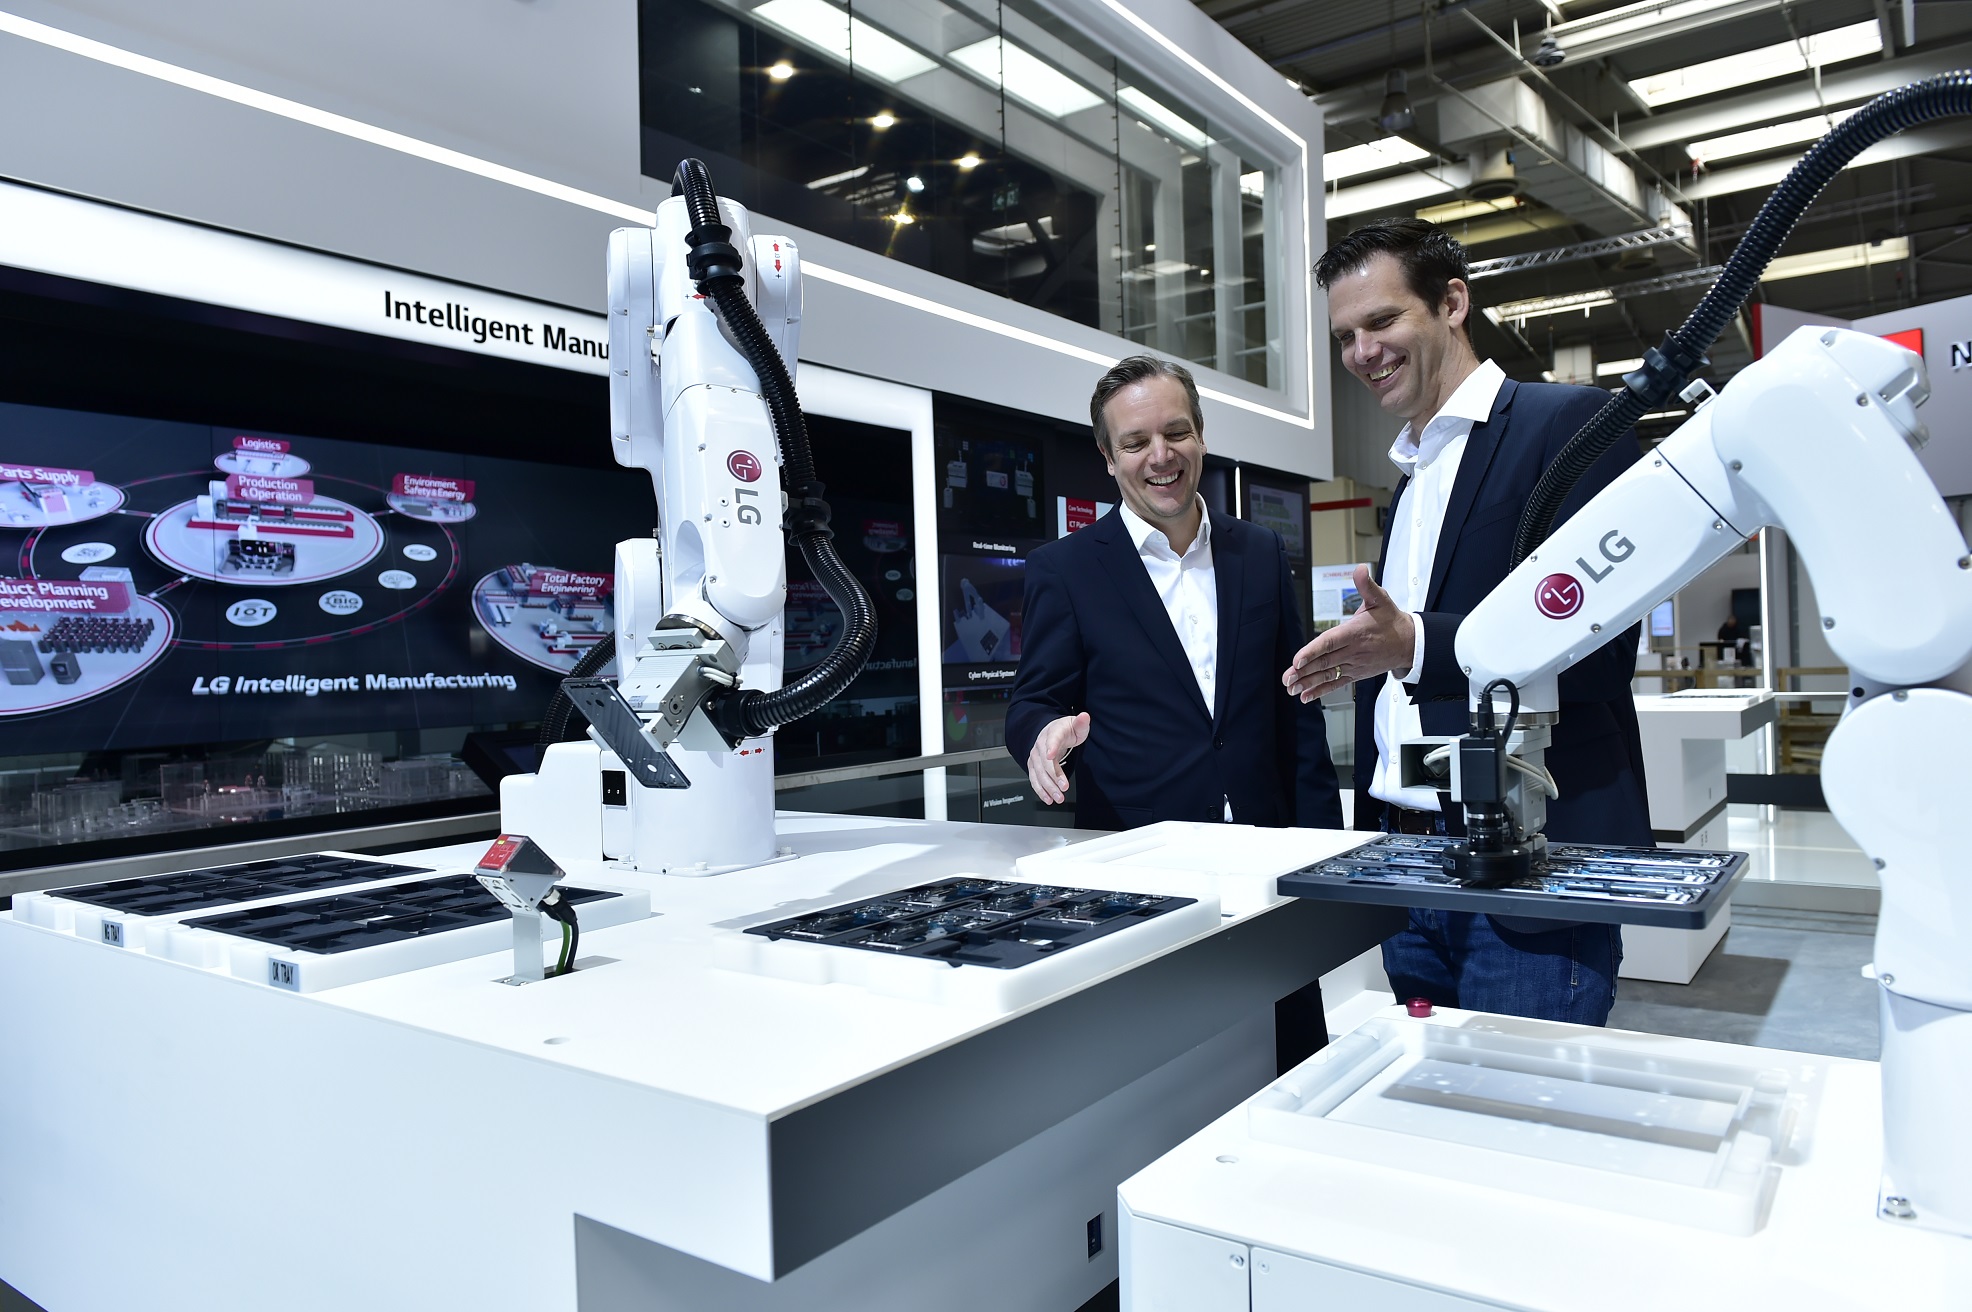    LG전자가 현지시간 1일부터 5일간 독일 하노버에서 열리는산업 기술 전시회 ‘하노버 메세 2019(Hannover Messe 2019)’에 처음으로 참가해 다양한 지능형 제조 솔루션을 공개한다.      관람객들이 모바일매니퓰레이터가 스마트폰 부품을 이송하는 모습을 살펴보고 있다.